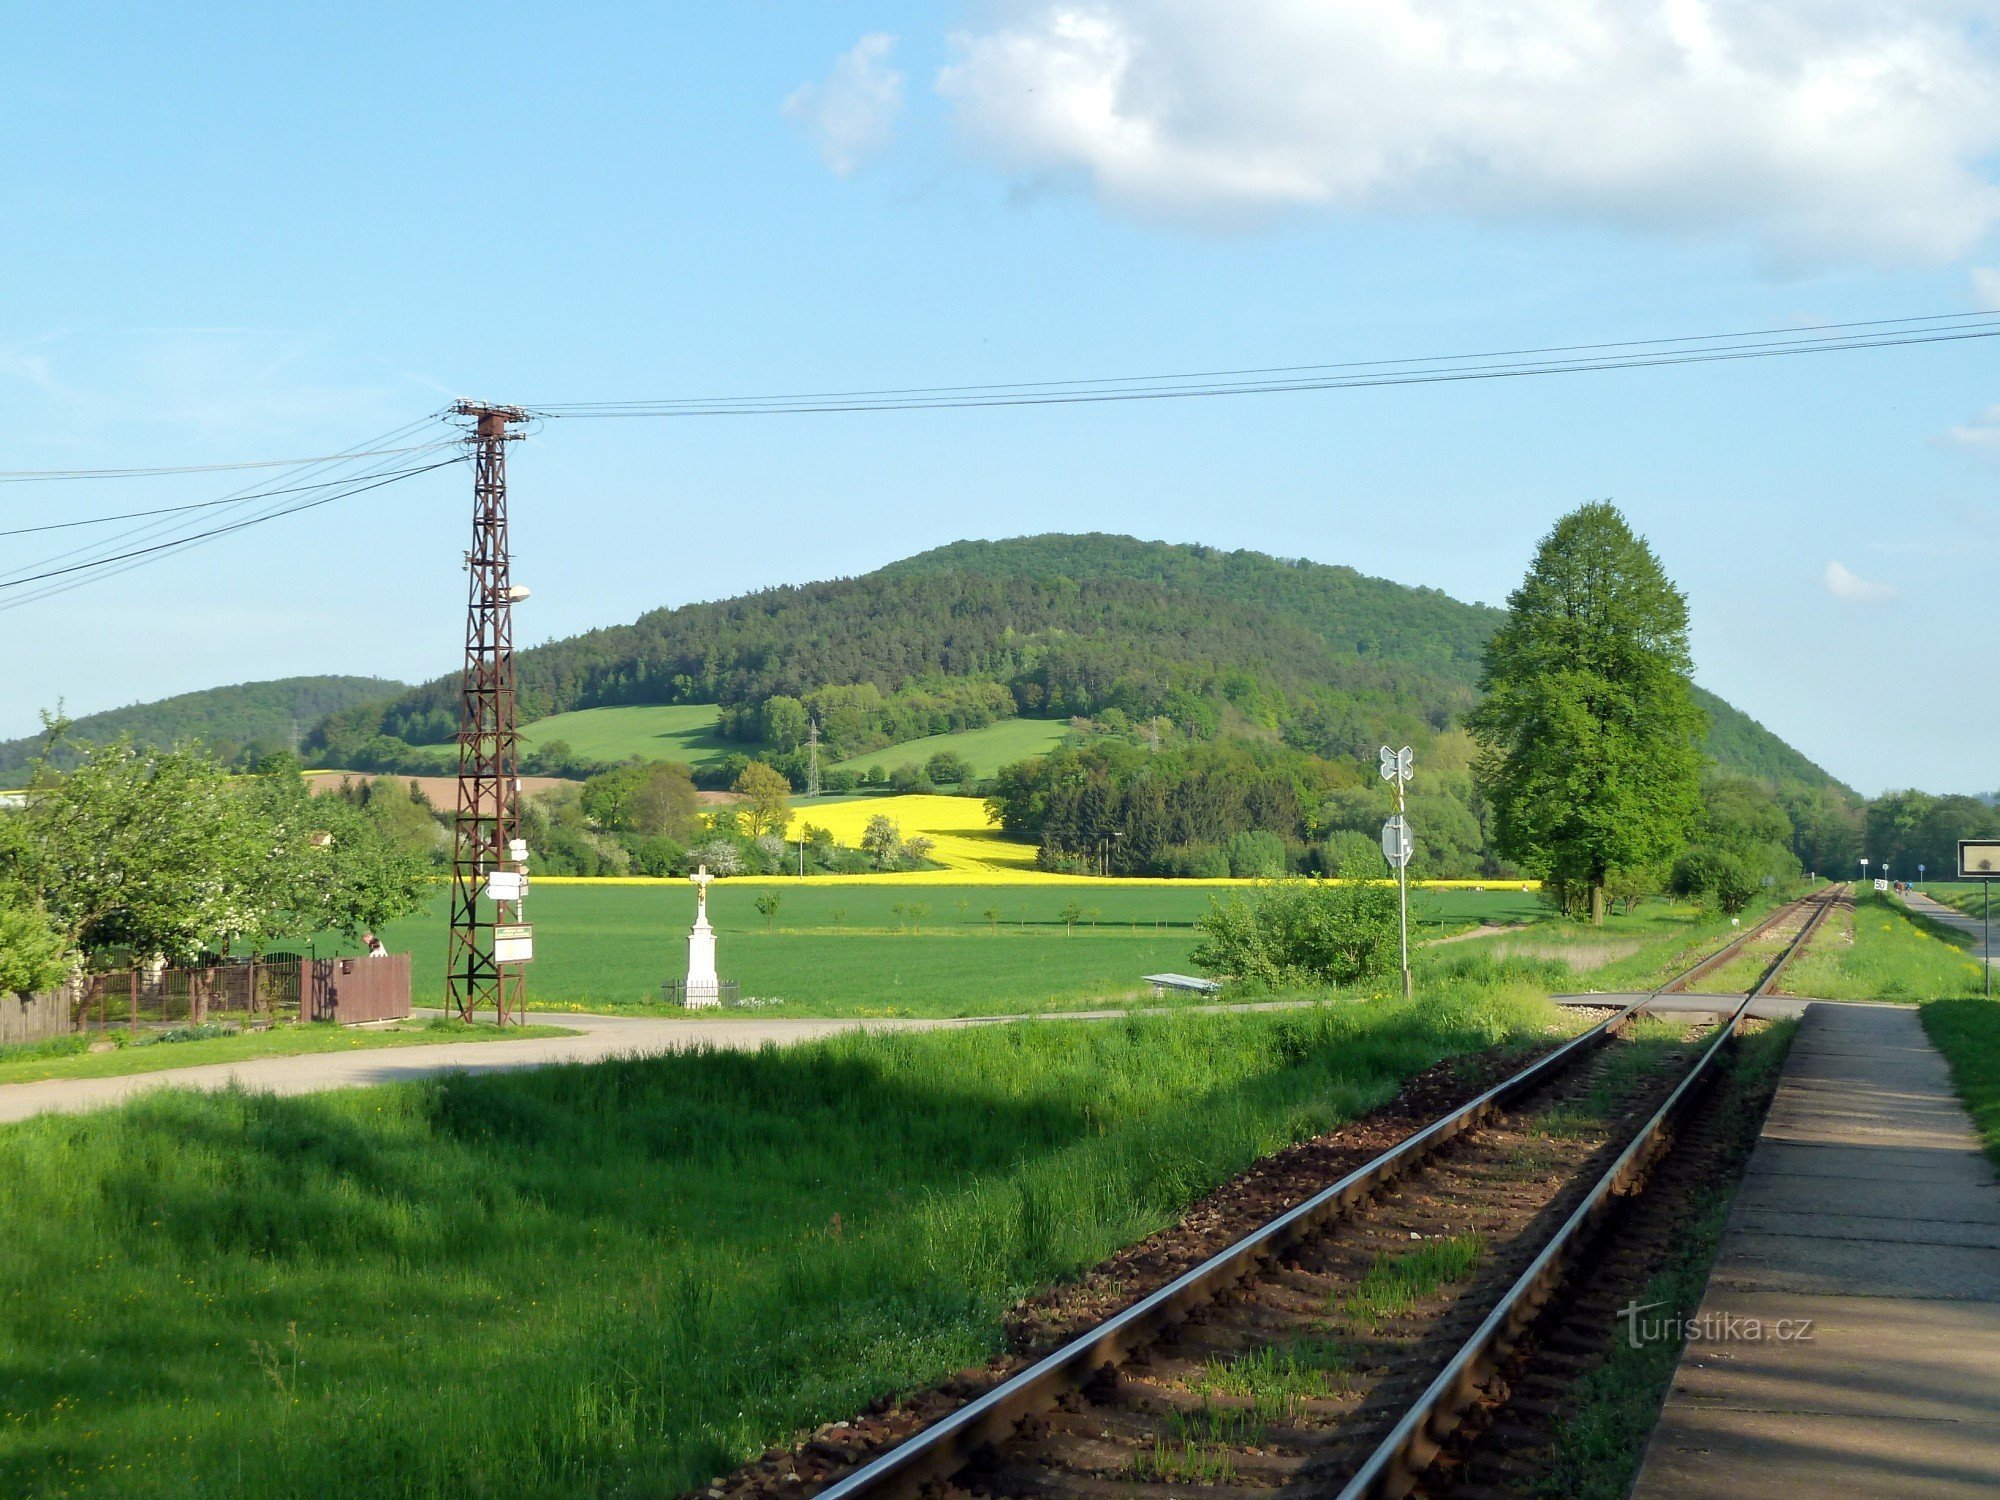 στάση τρένου - σταυροδρόμι στην κολόνα στο αριστερό μέρος της φωτογραφίας